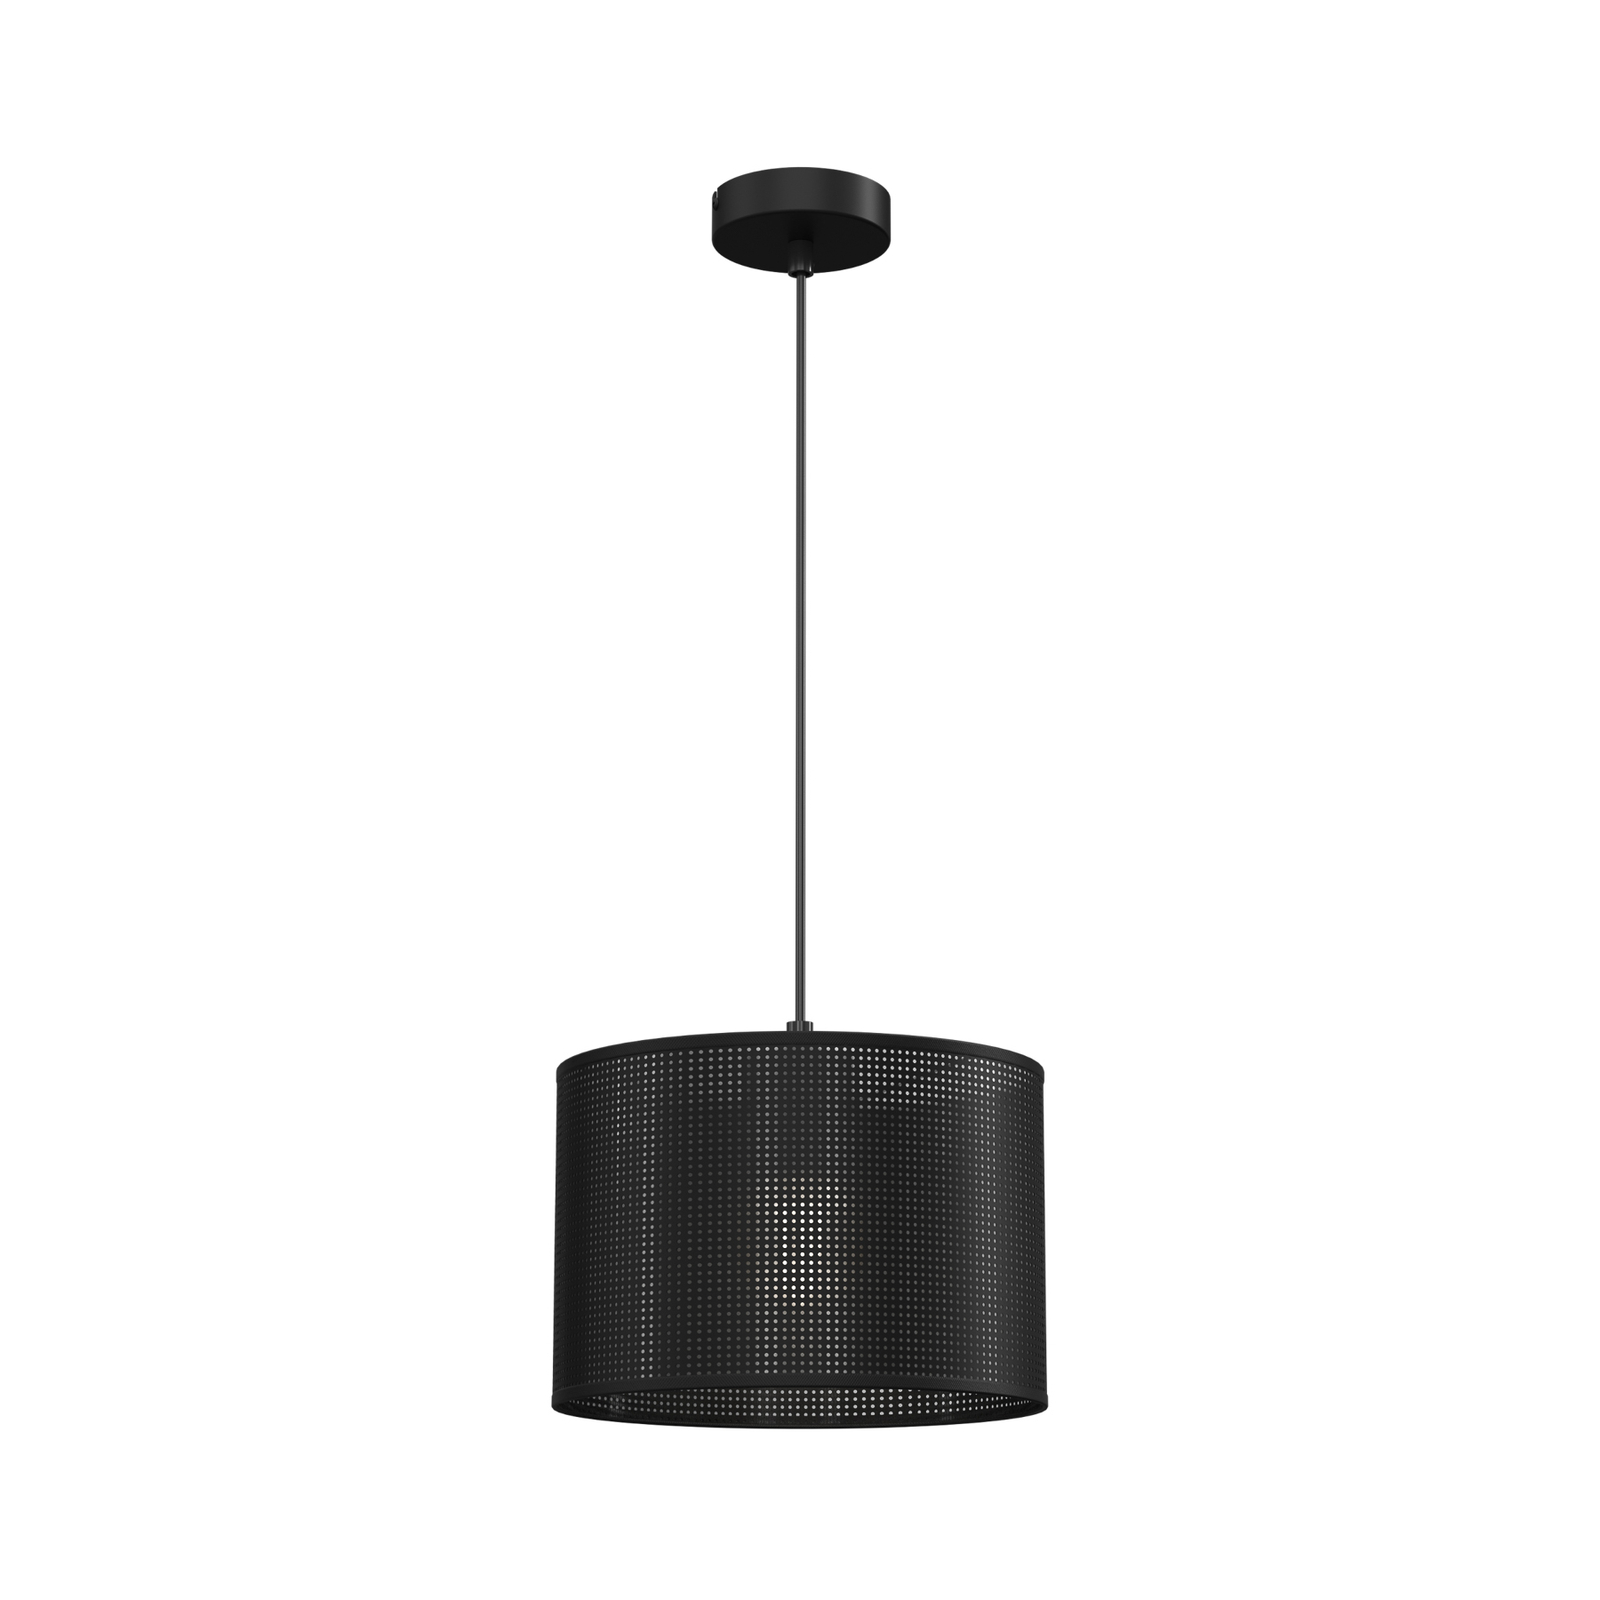 Jovin pendant light, one-bulb, Ø 25cm, black